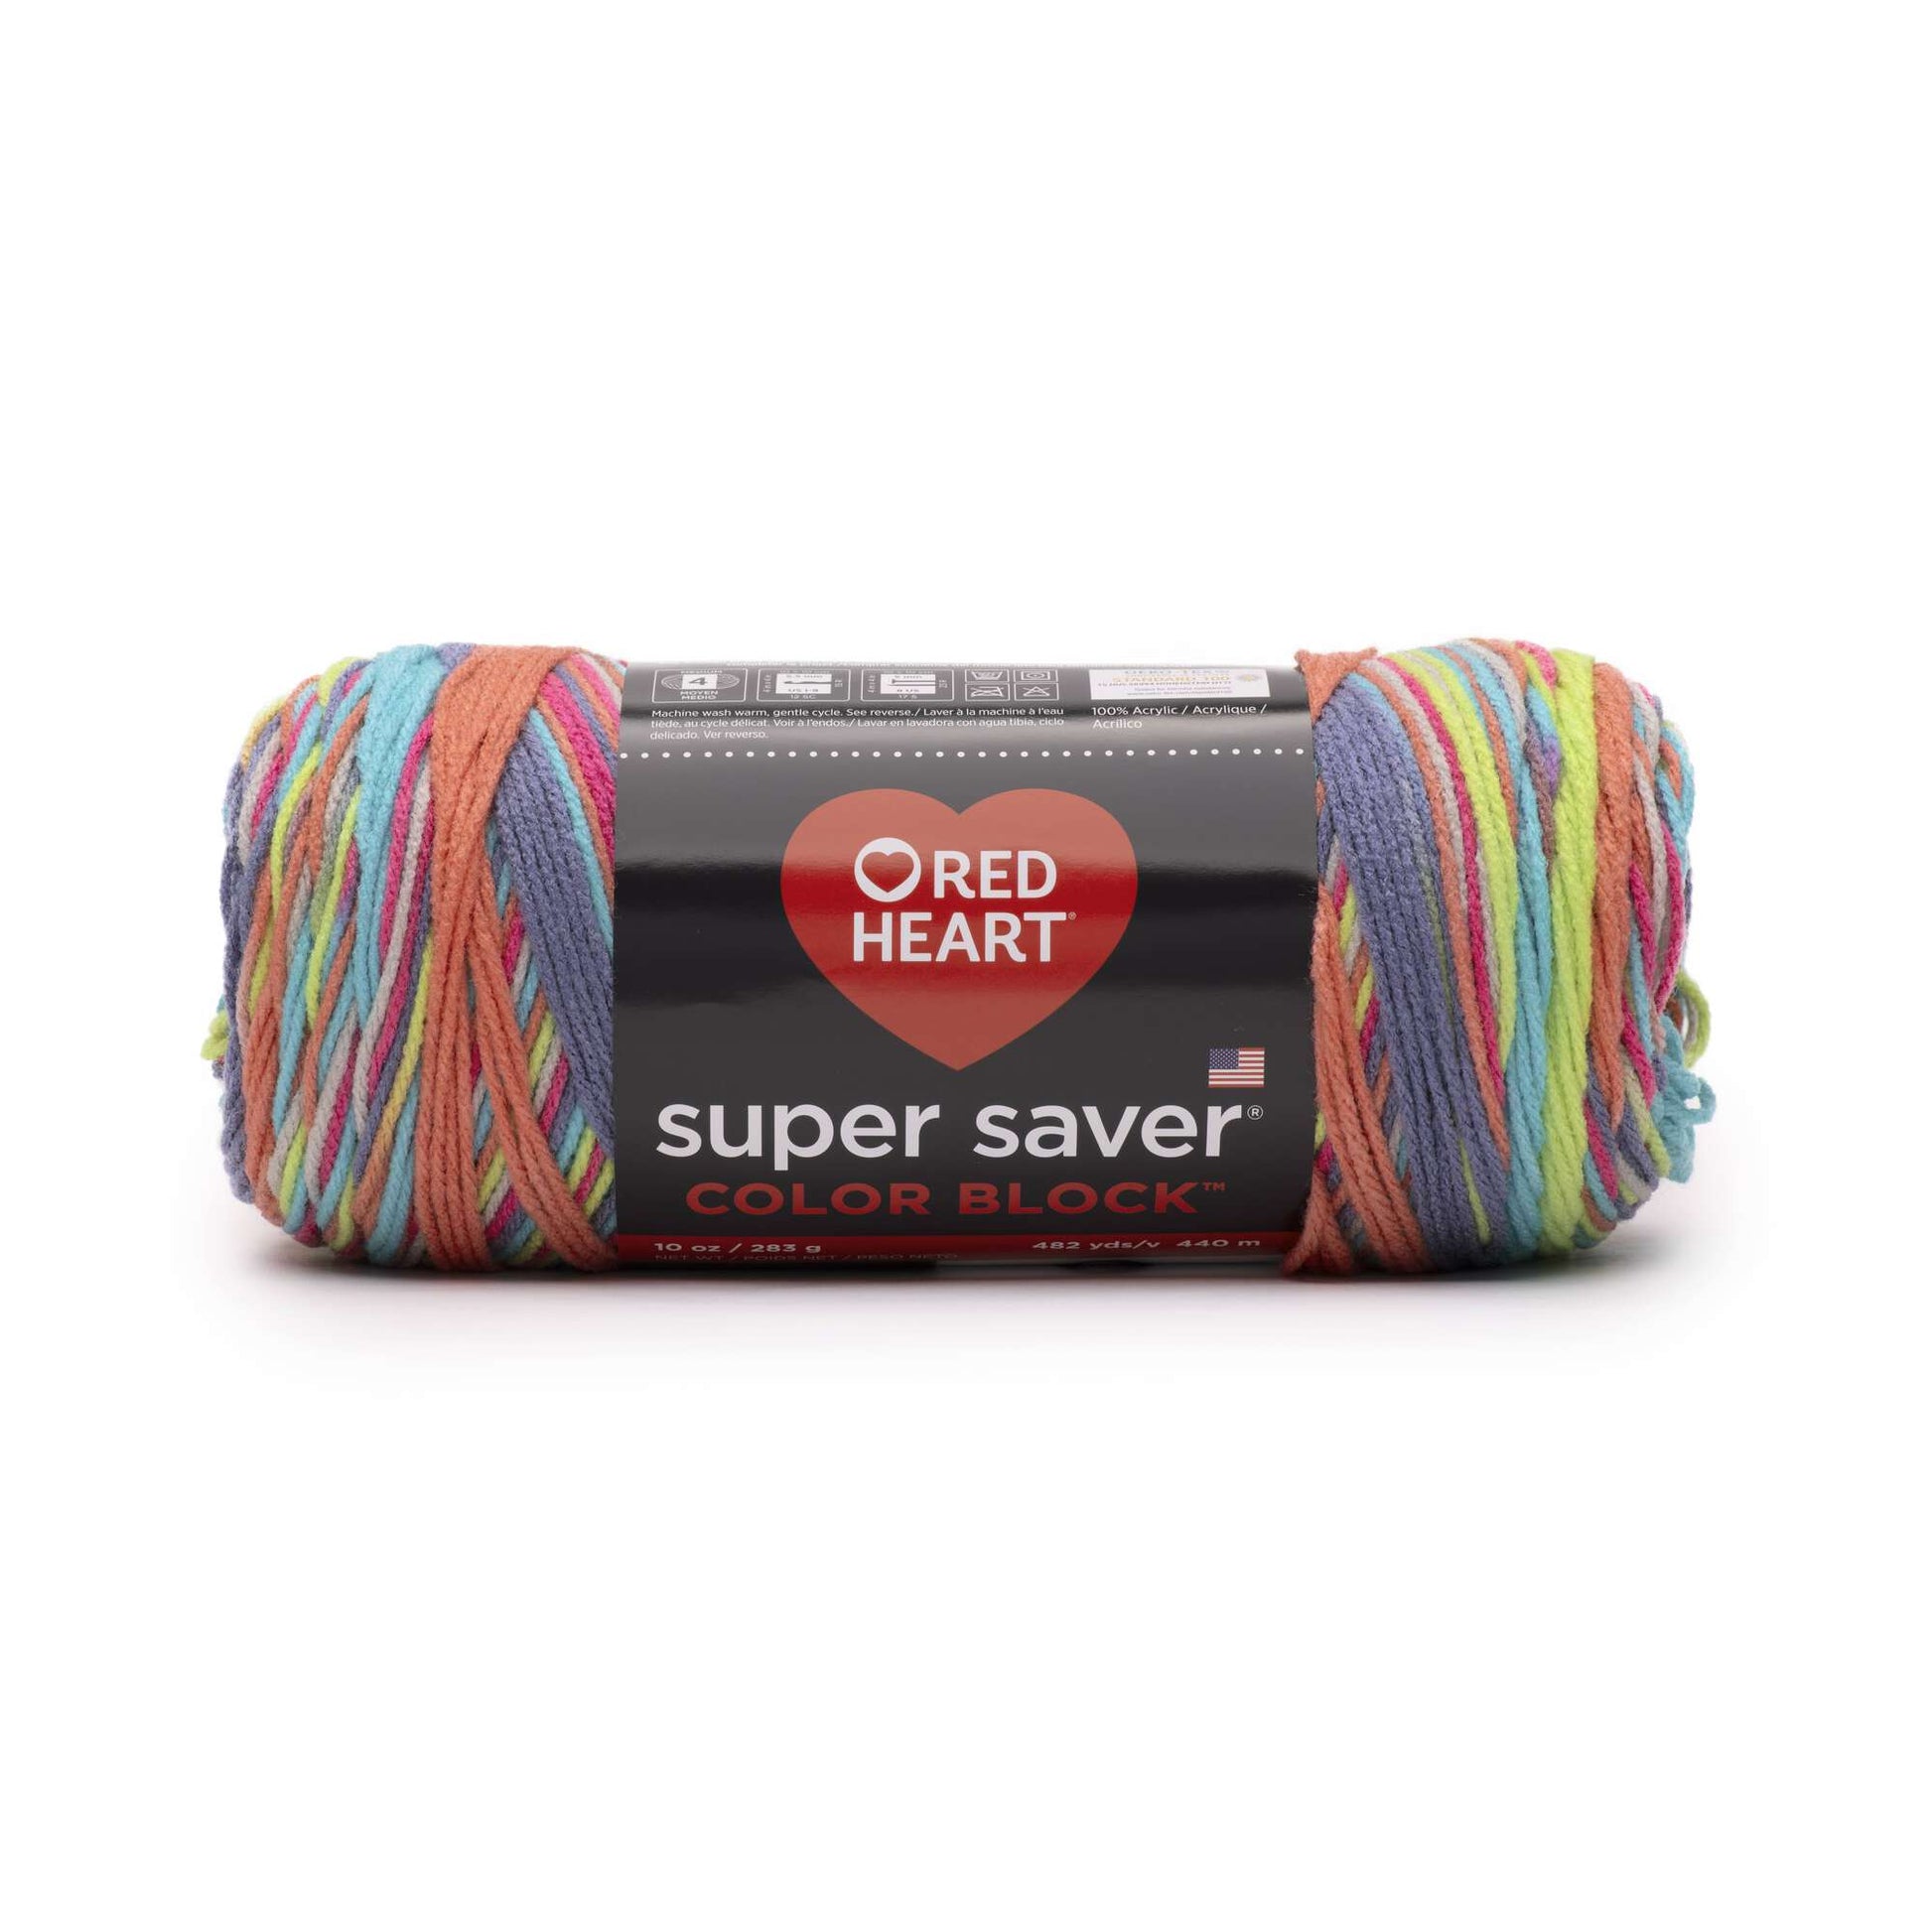 Red Heart Super Saver Yarn - Blacklight